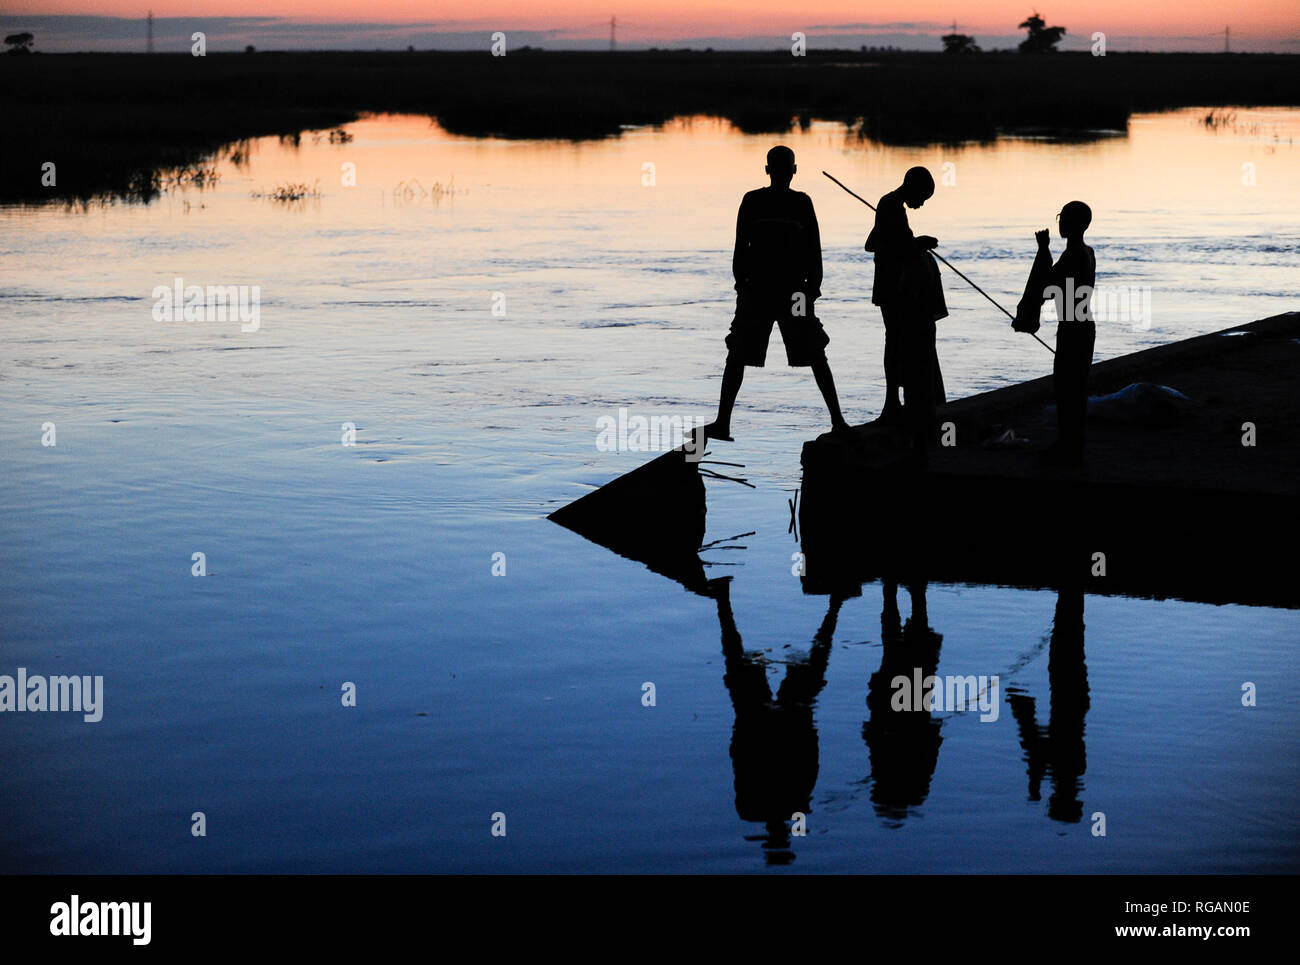 ZAMBIA Barotseland Mongu, Mulamba harbour at river Zambezi flood plain, people fishing at dawn / SAMBIA Barotseland , Stadt Mongu , Hafen Mulamba in der Flutebene des Zambezi Fluss, Menschen angeln in der Abenddaemmerung Stock Photo